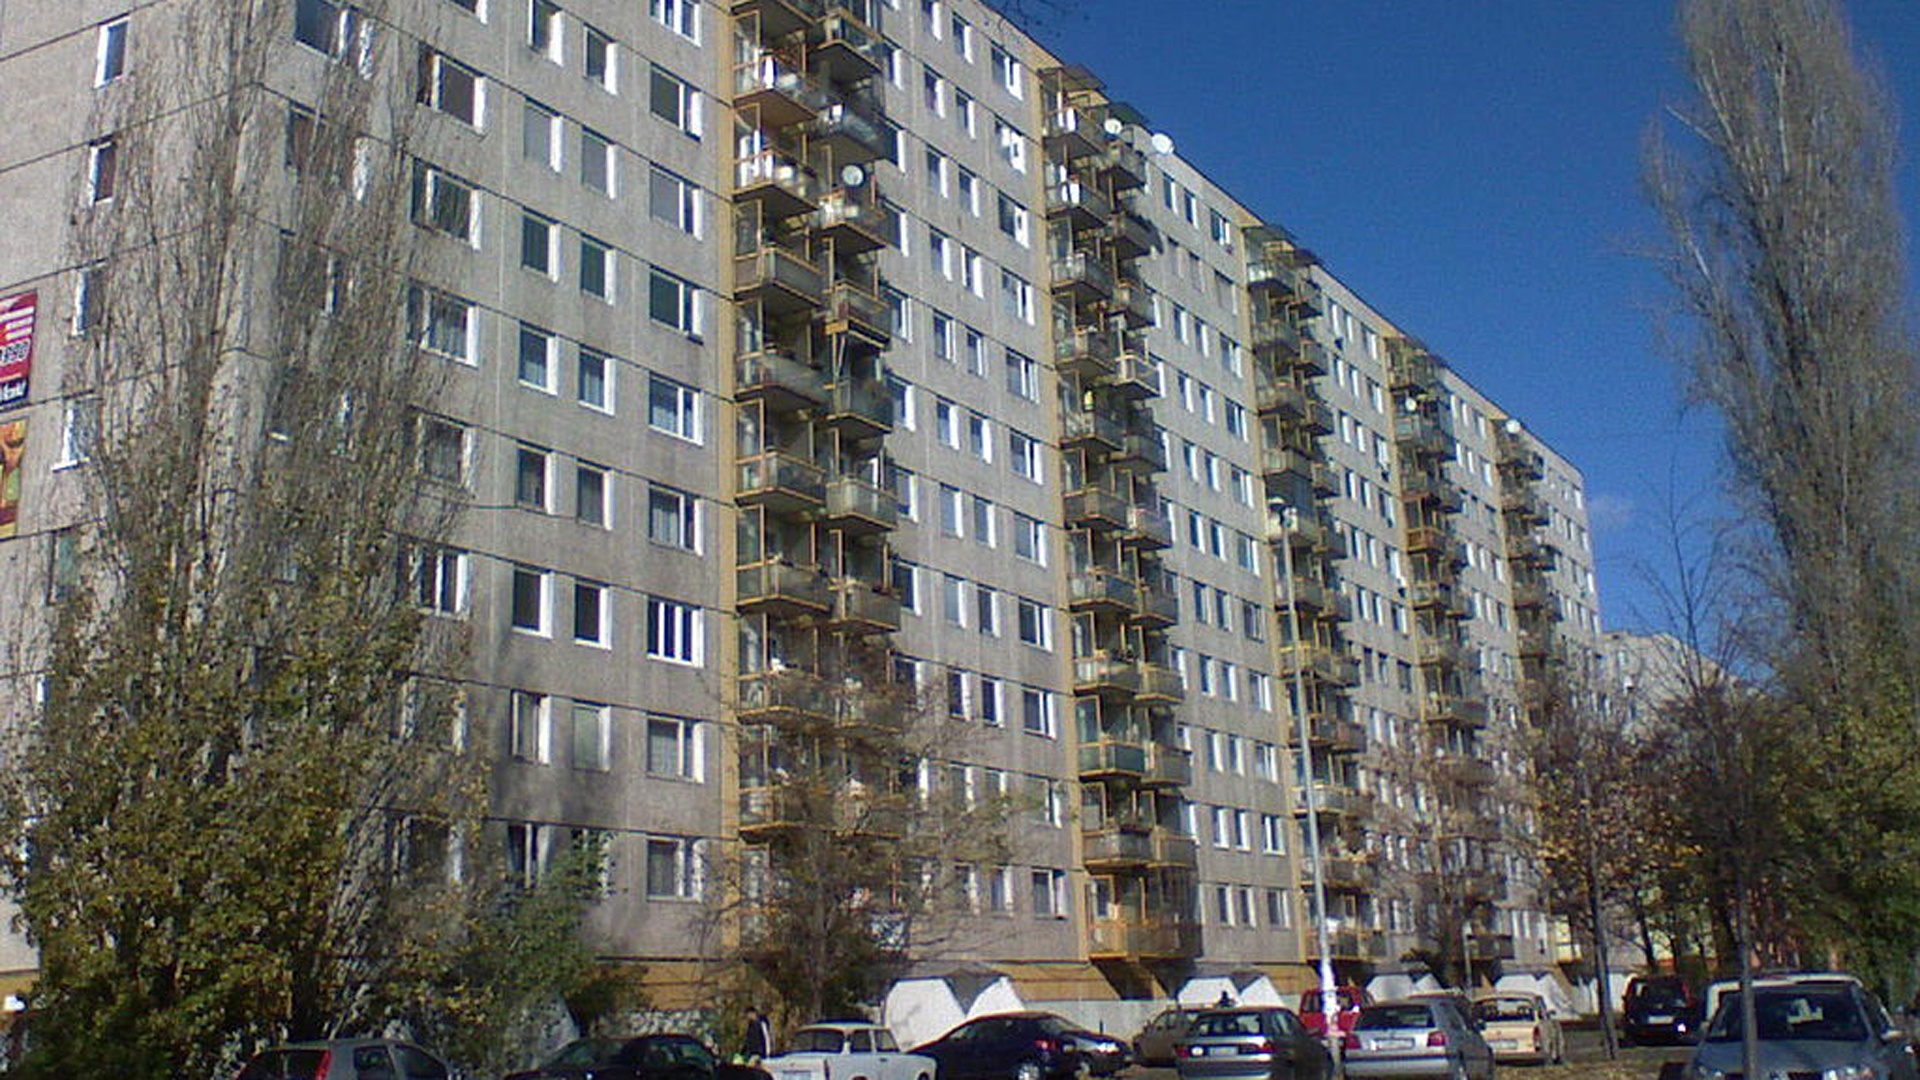 Kispesti panelház / Képünk illusztráció / Fotó: Wikipedia